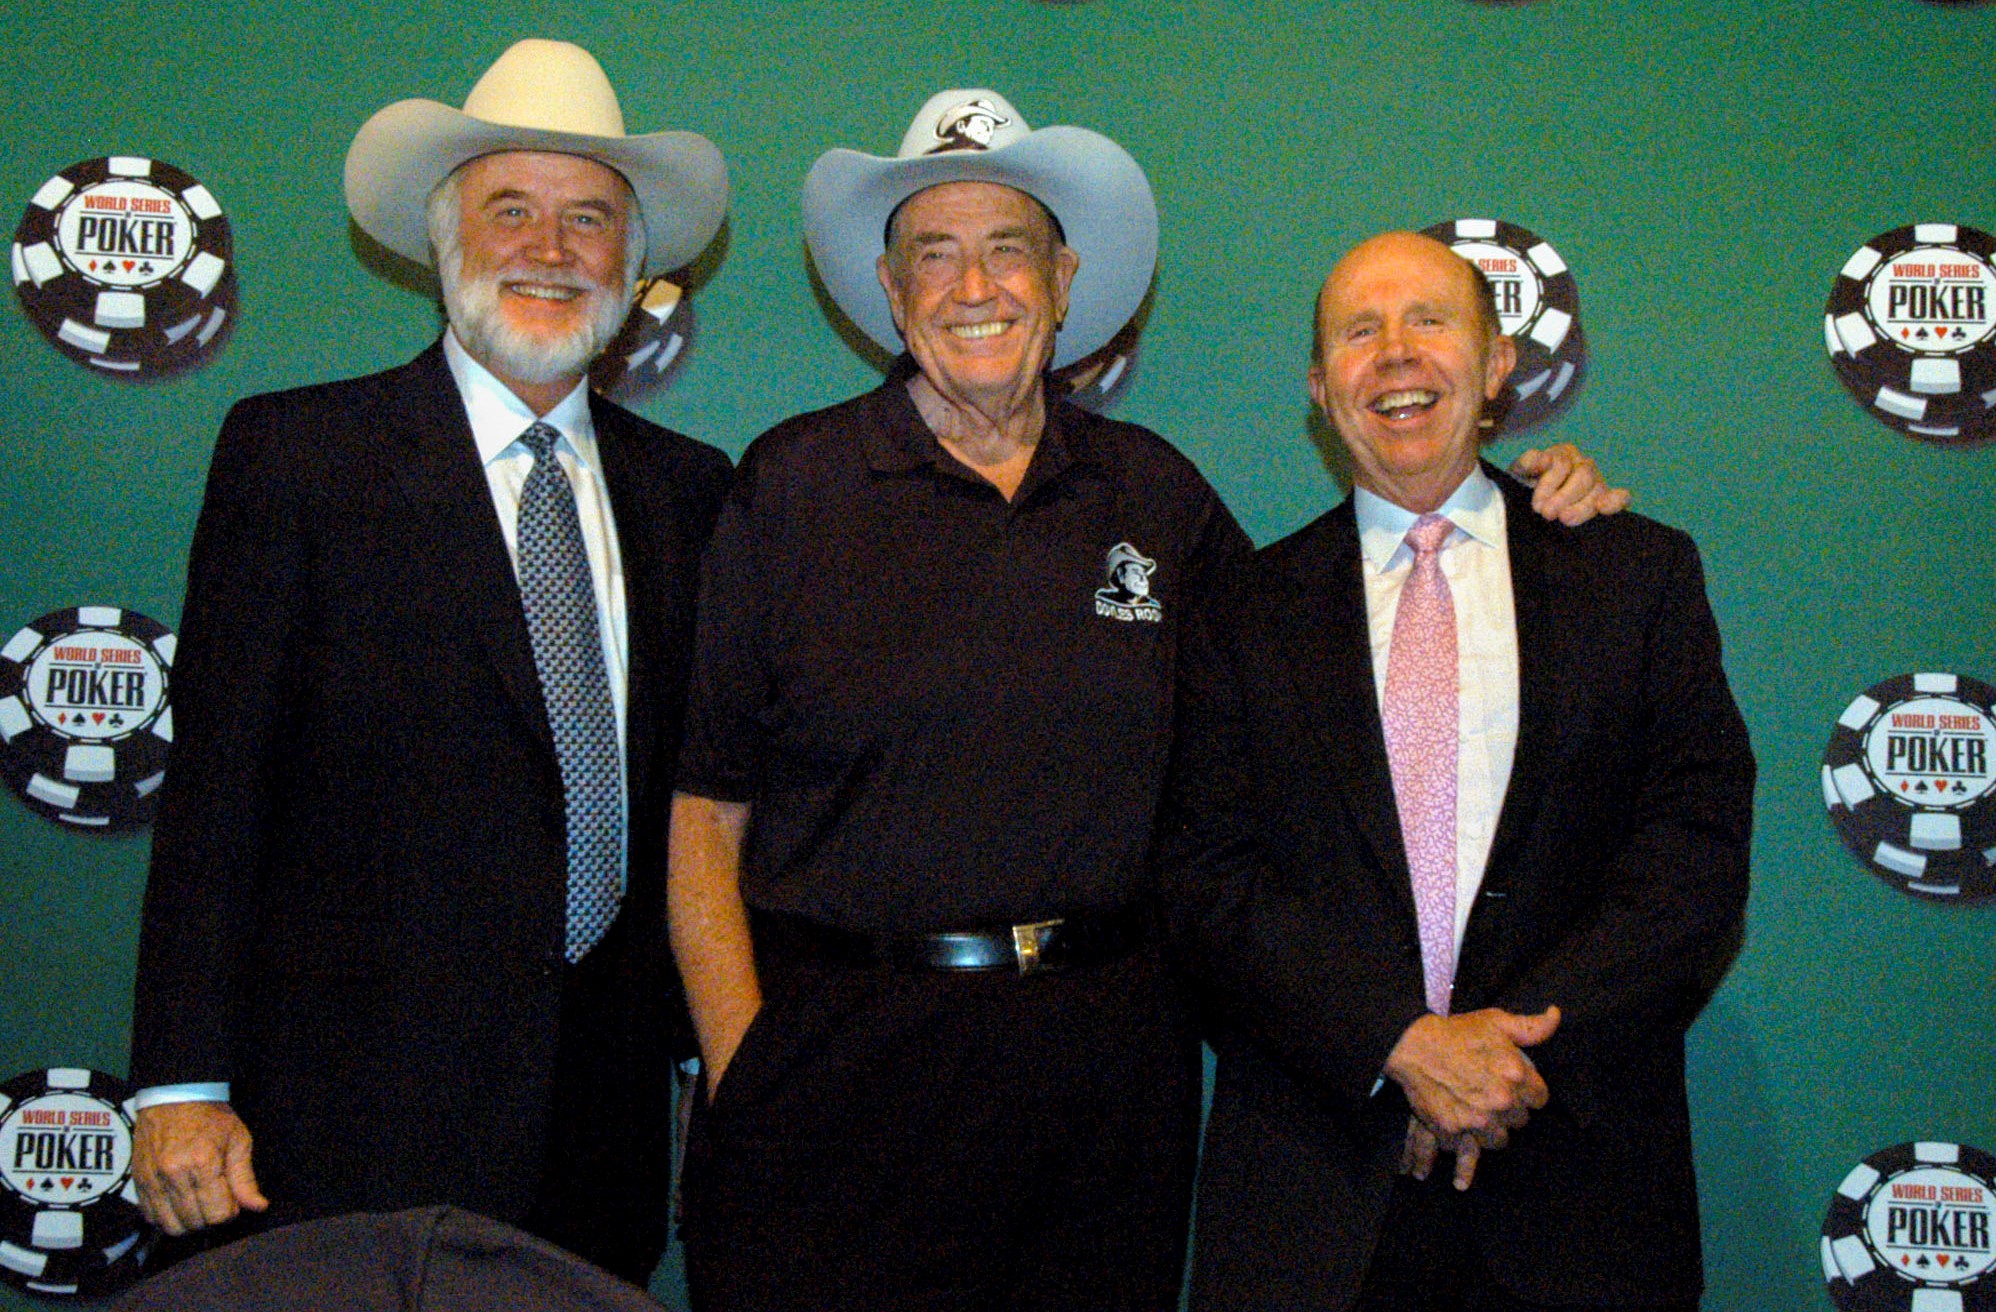 Аддингтон, Брансон и Бинион на церемонии включении в Зал покерной славы , 2005 год.